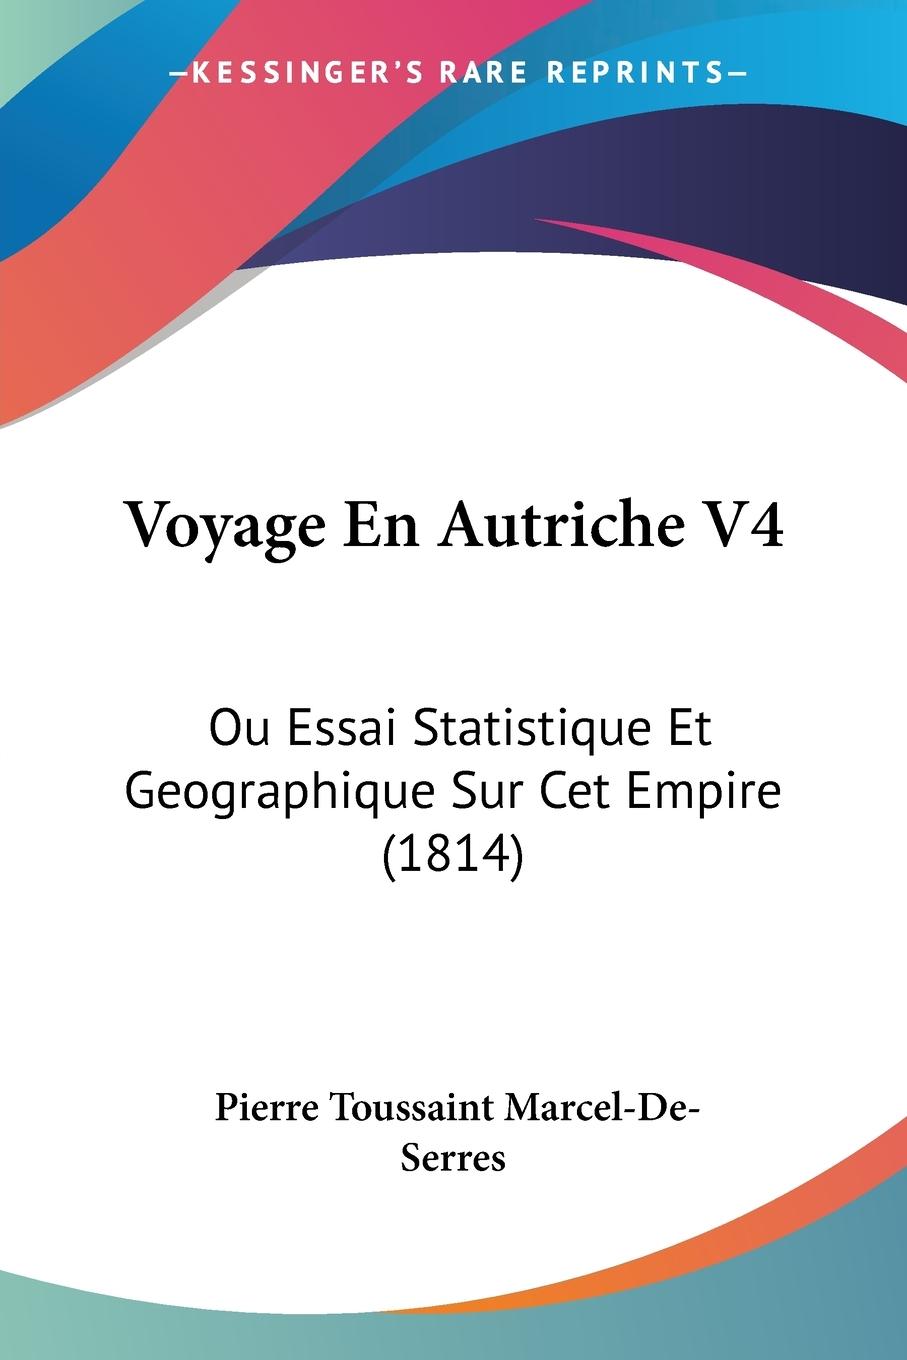 Voyage En Autriche V4 - Marcel-De-Serres, Pierre Toussaint